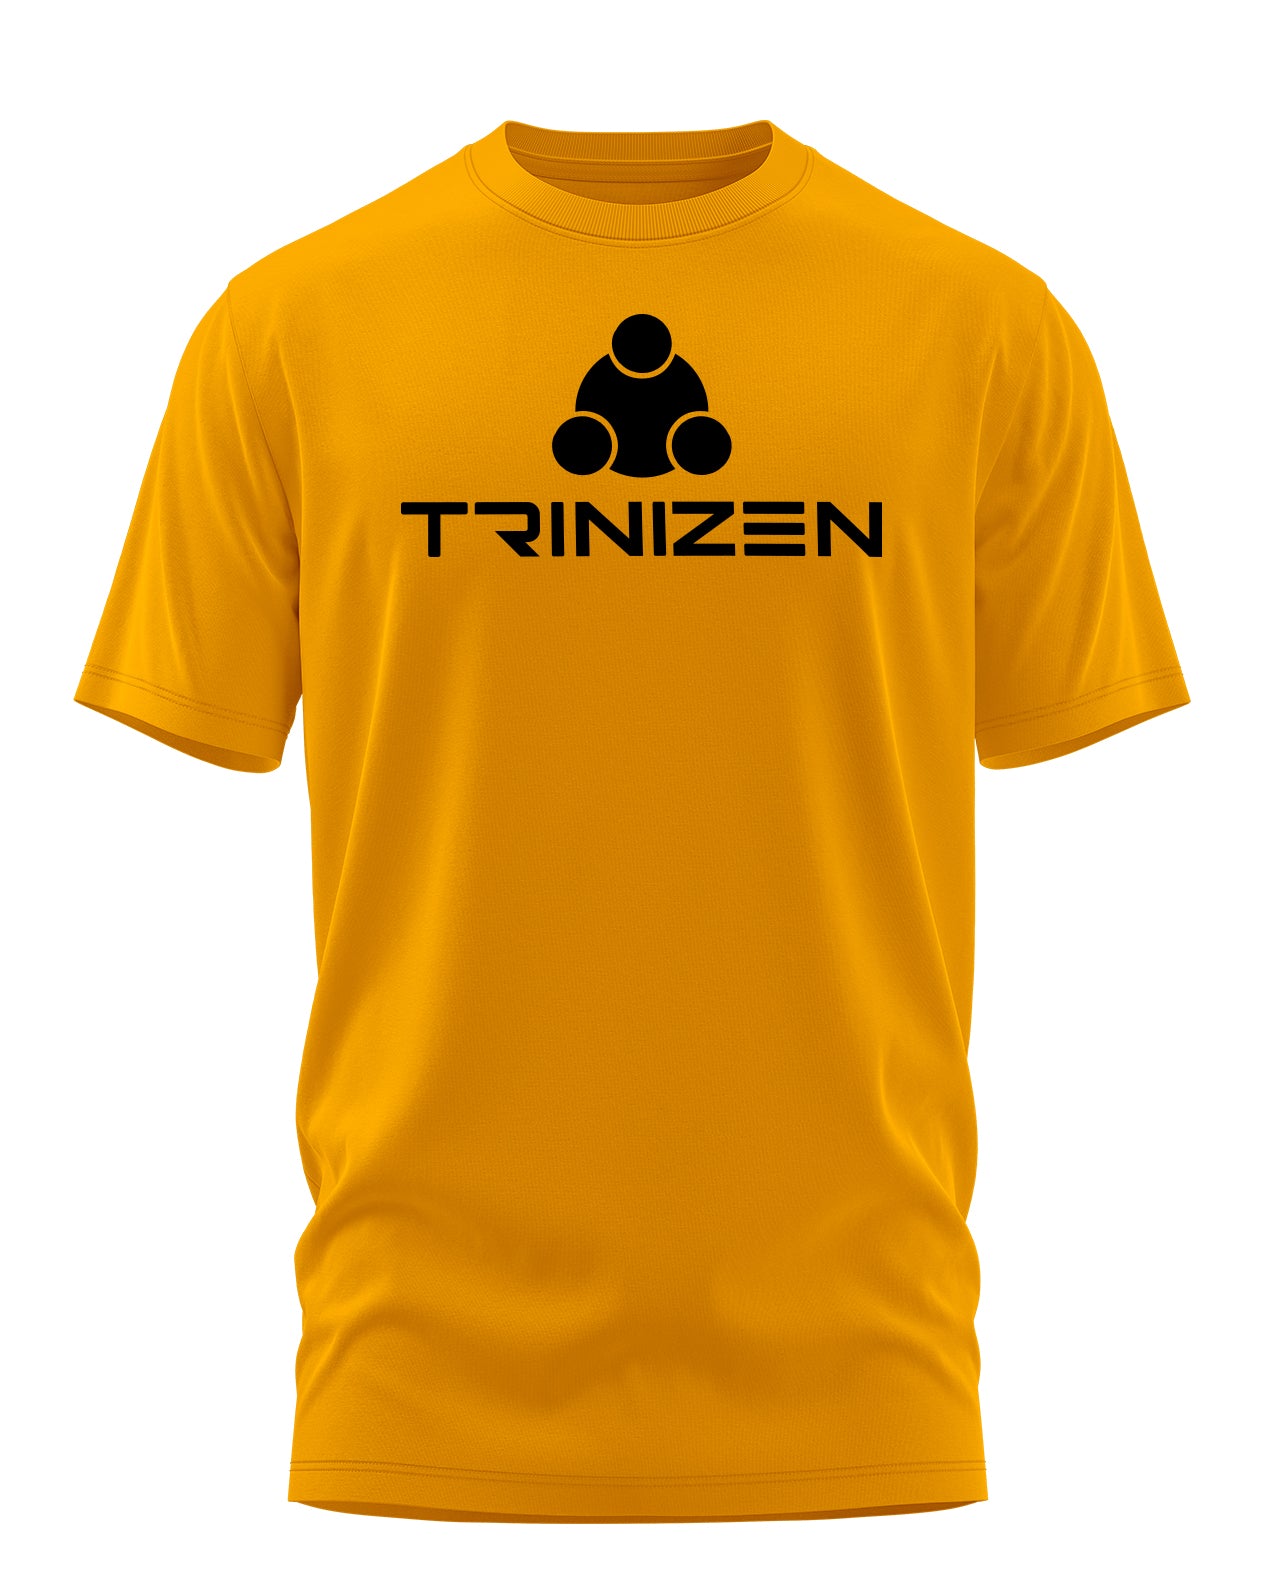 Trinizen Original T-shirts